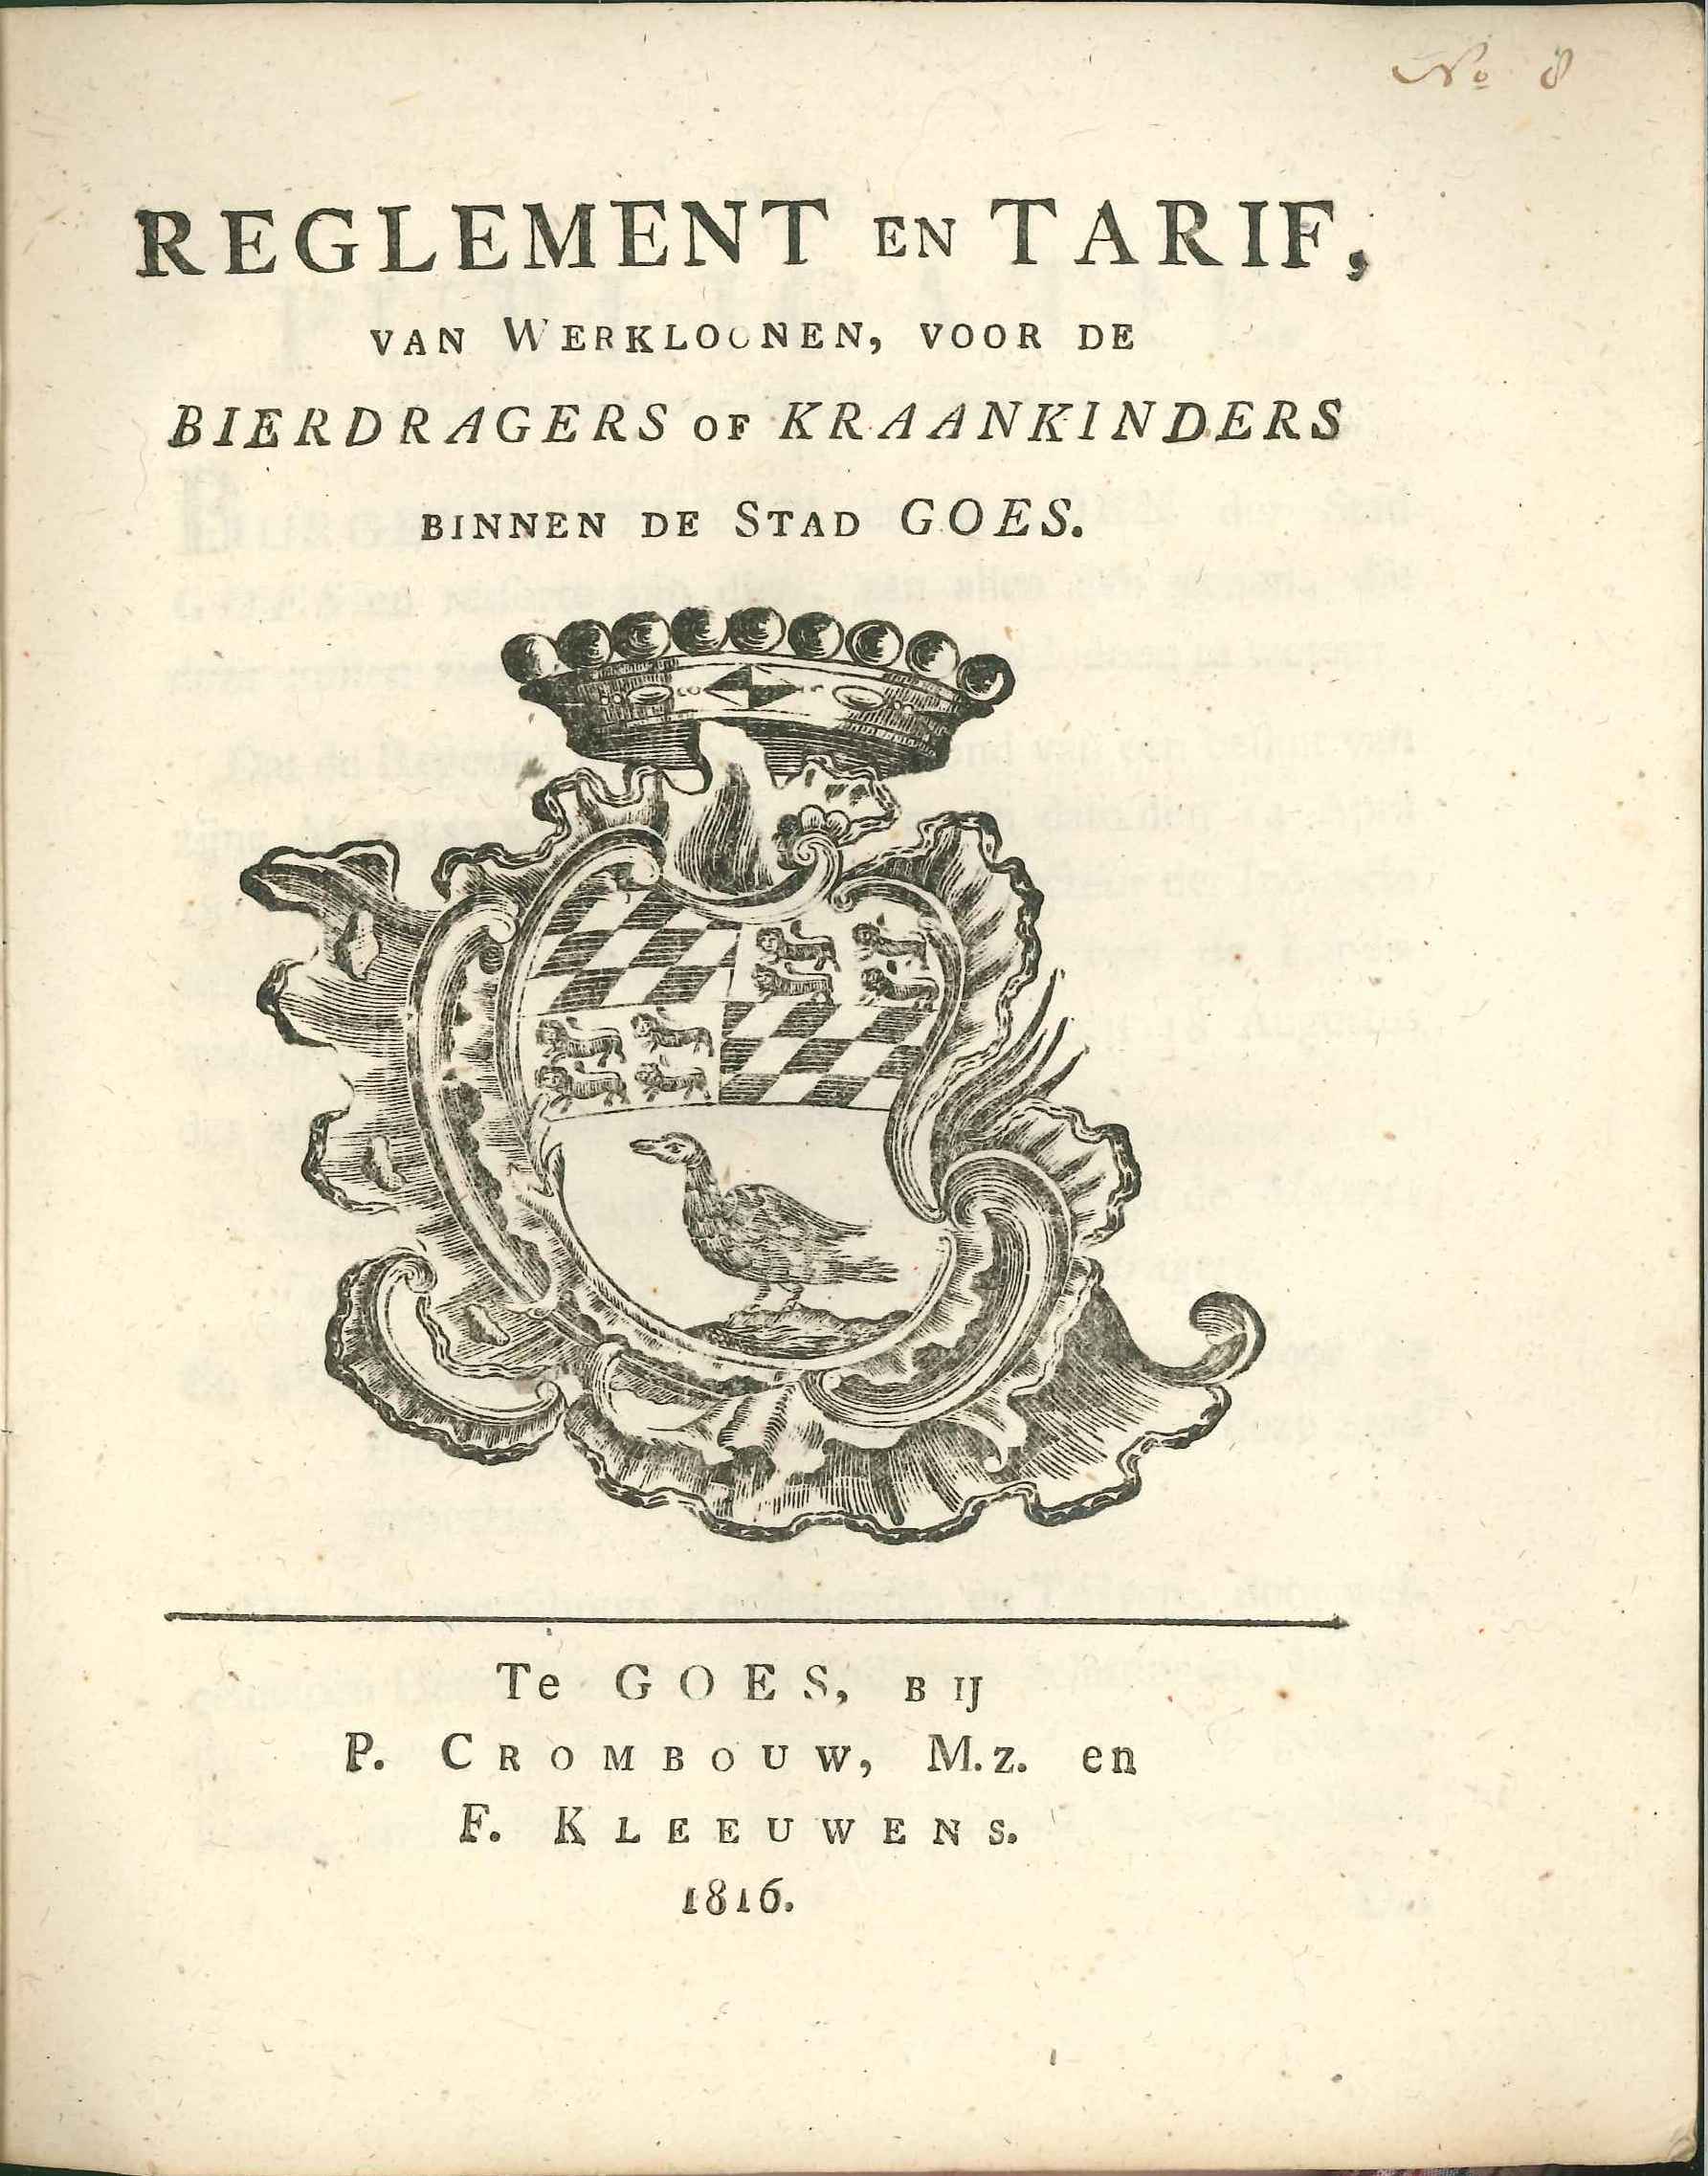 Reglement op de bierdragers ofwel kraankinders, 1816.